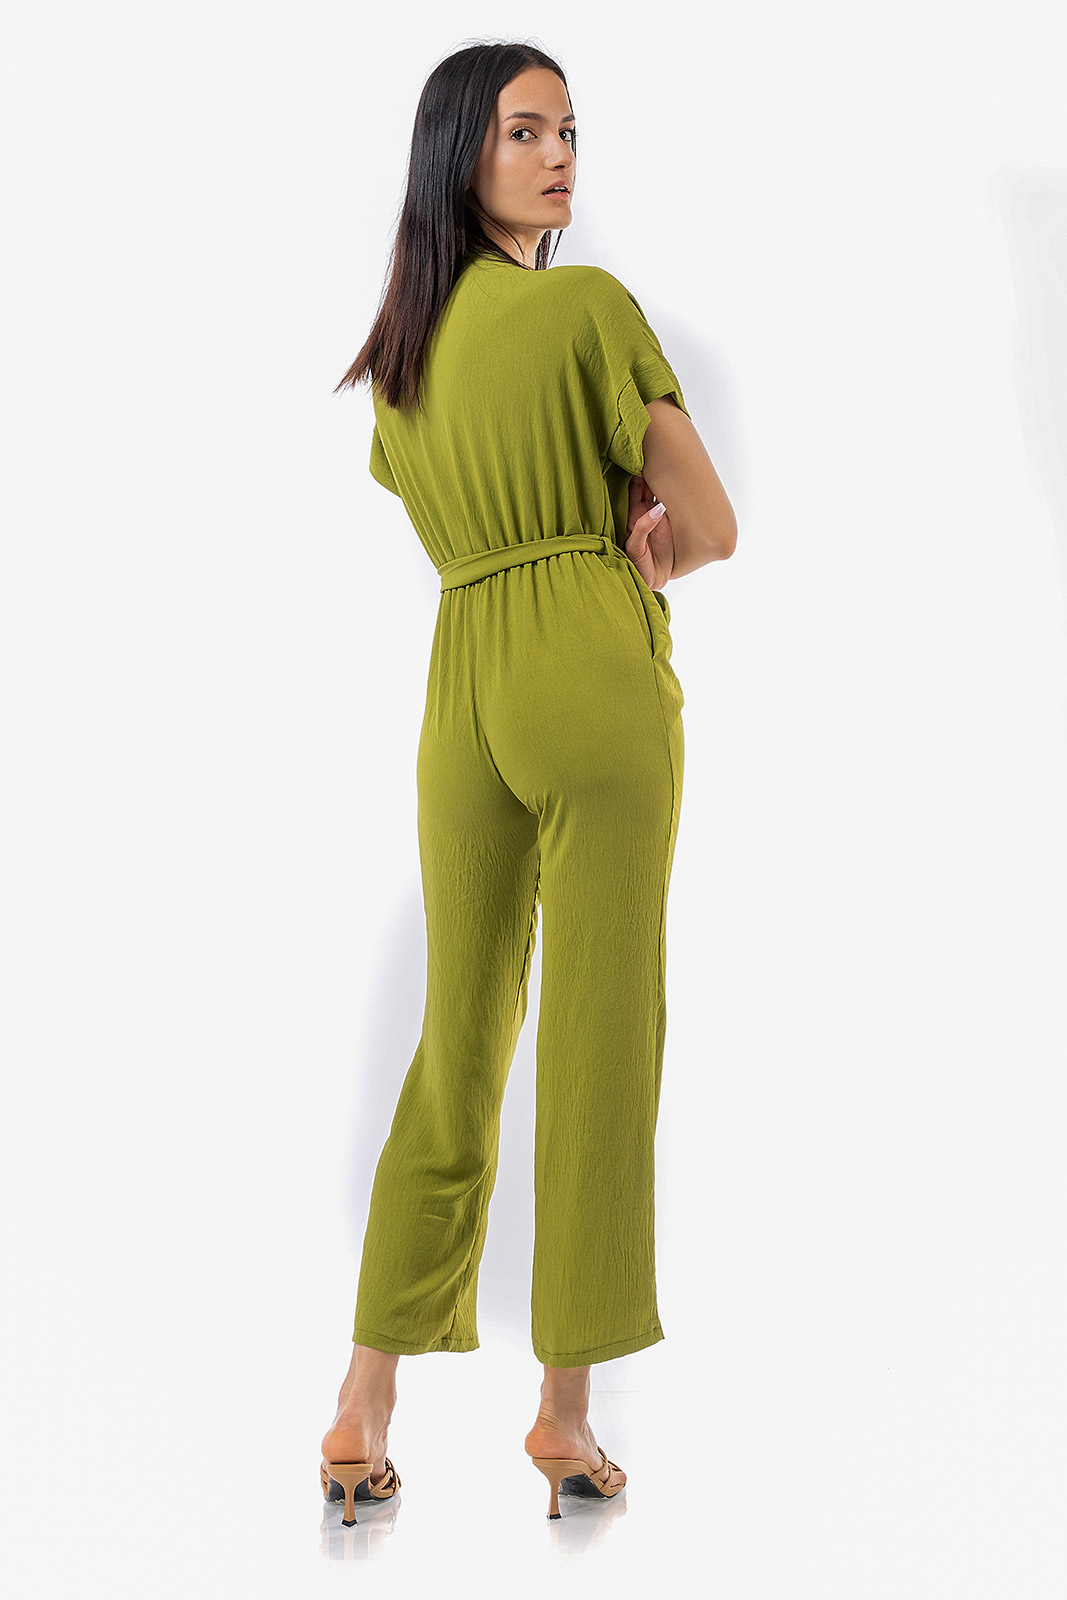 Lime jumpsuit - Womans Clothes - Dresses - Xanashop